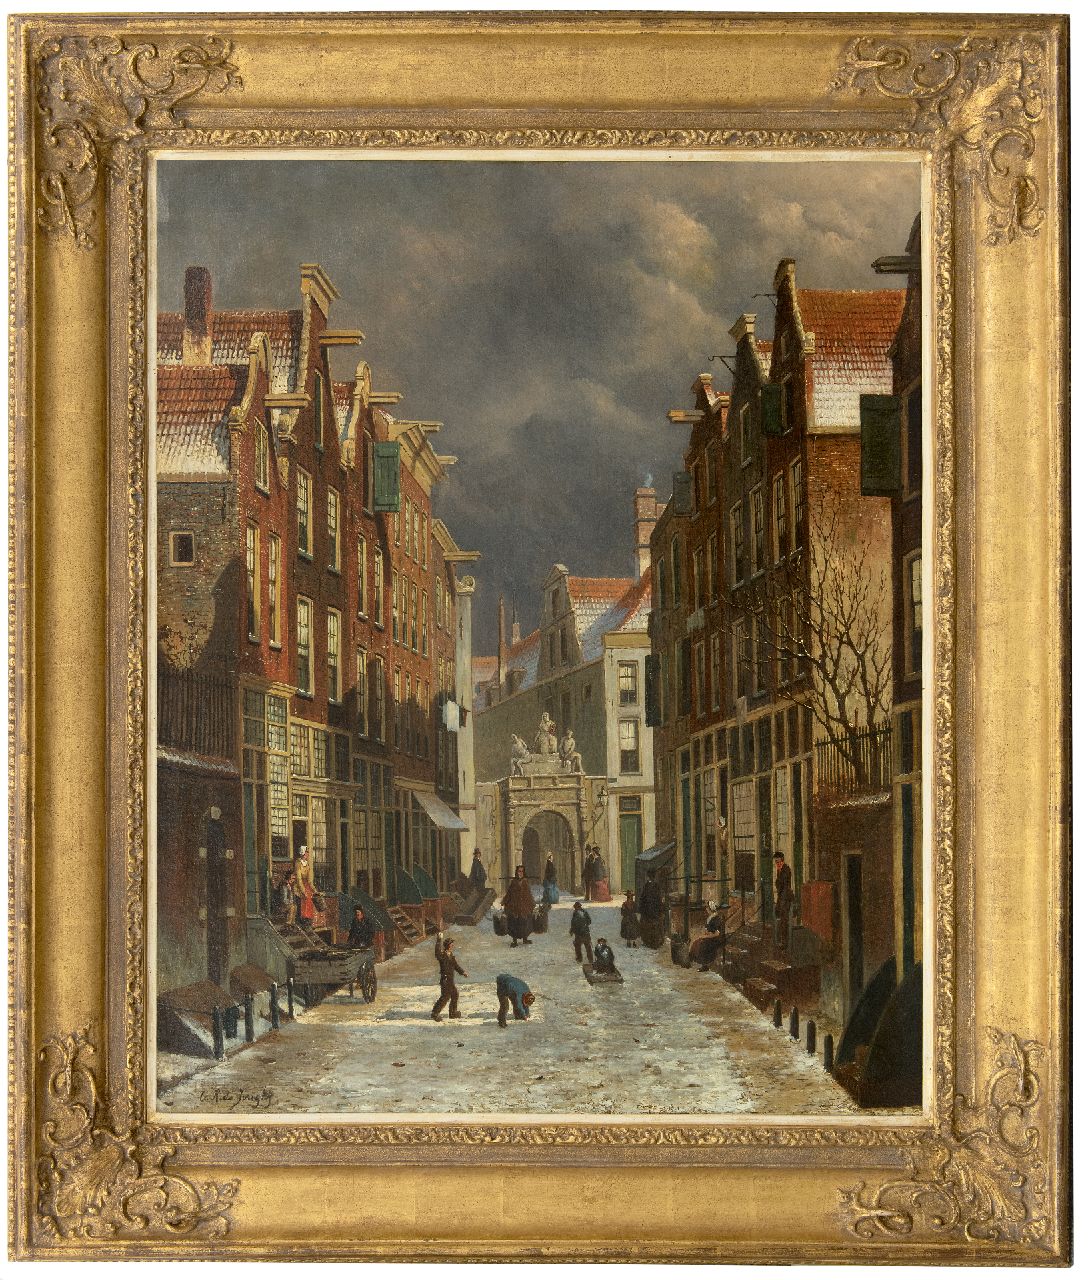 Jongh O.R. de | Oene Romkes de Jongh | Schilderijen te koop aangeboden | Gezicht op de Voetboogstraat met de Rasphuispoort, Amsterdam, olieverf op doek 86,8 x 70,4 cm, gesigneerd linksonder